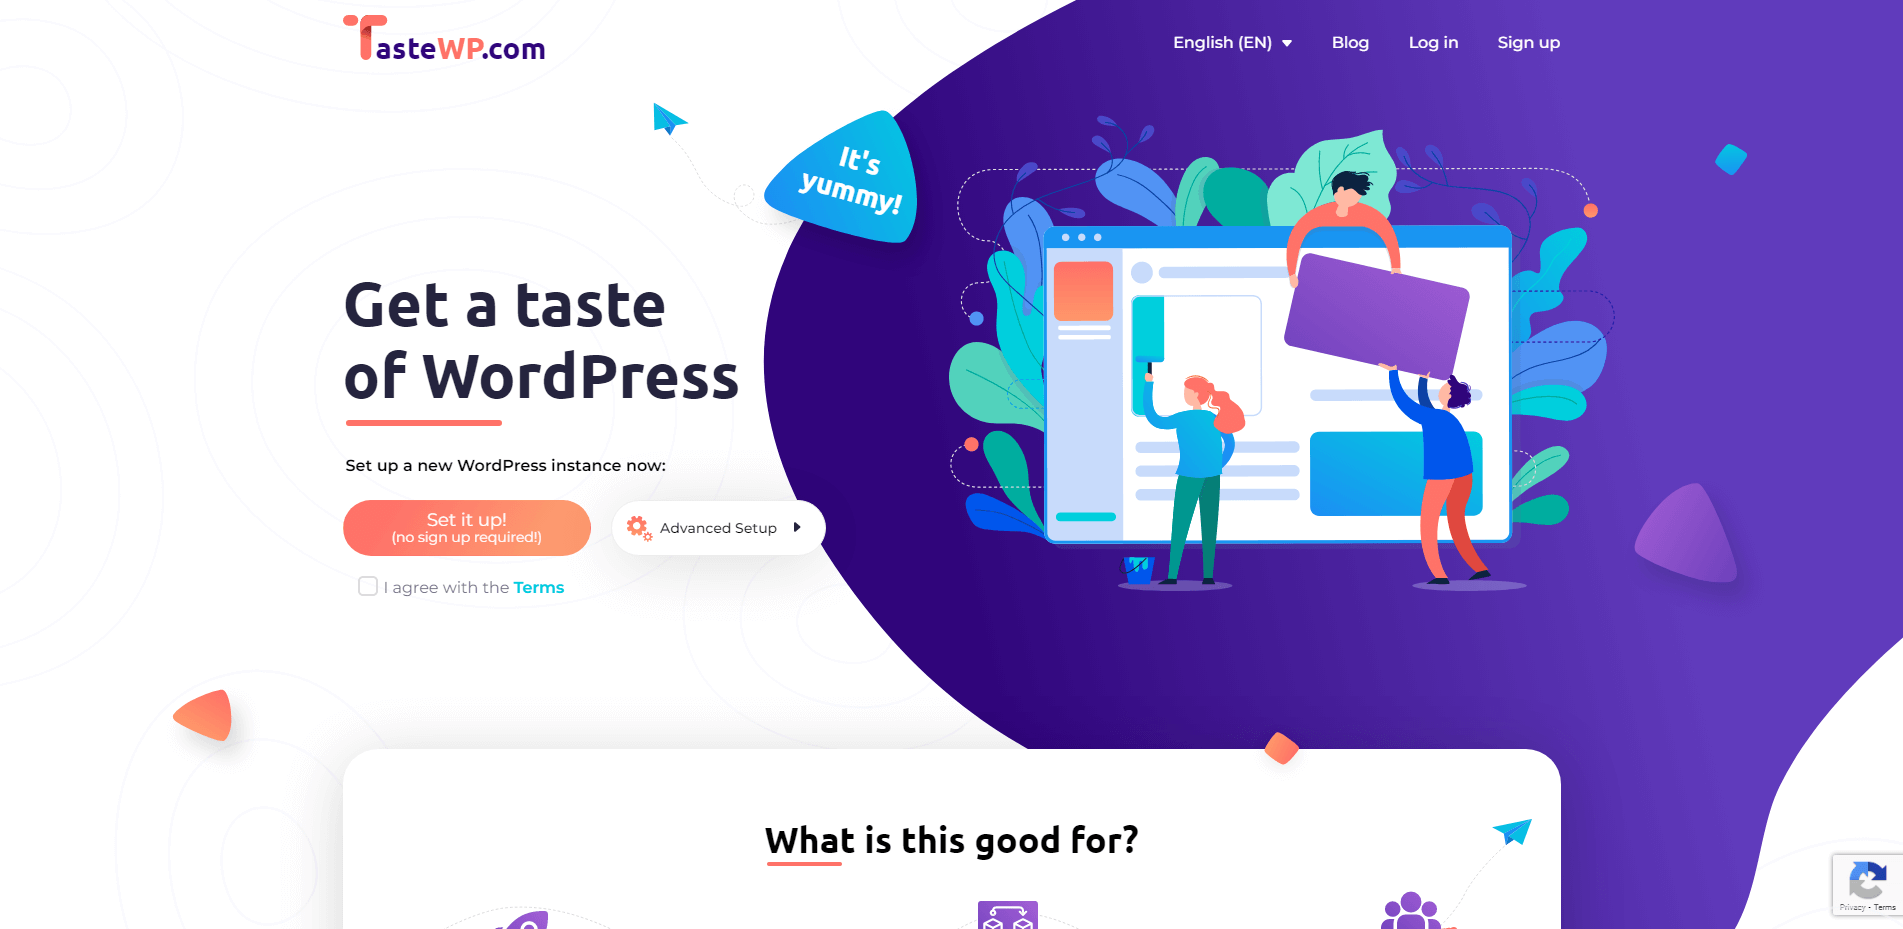 TasteWP homepage